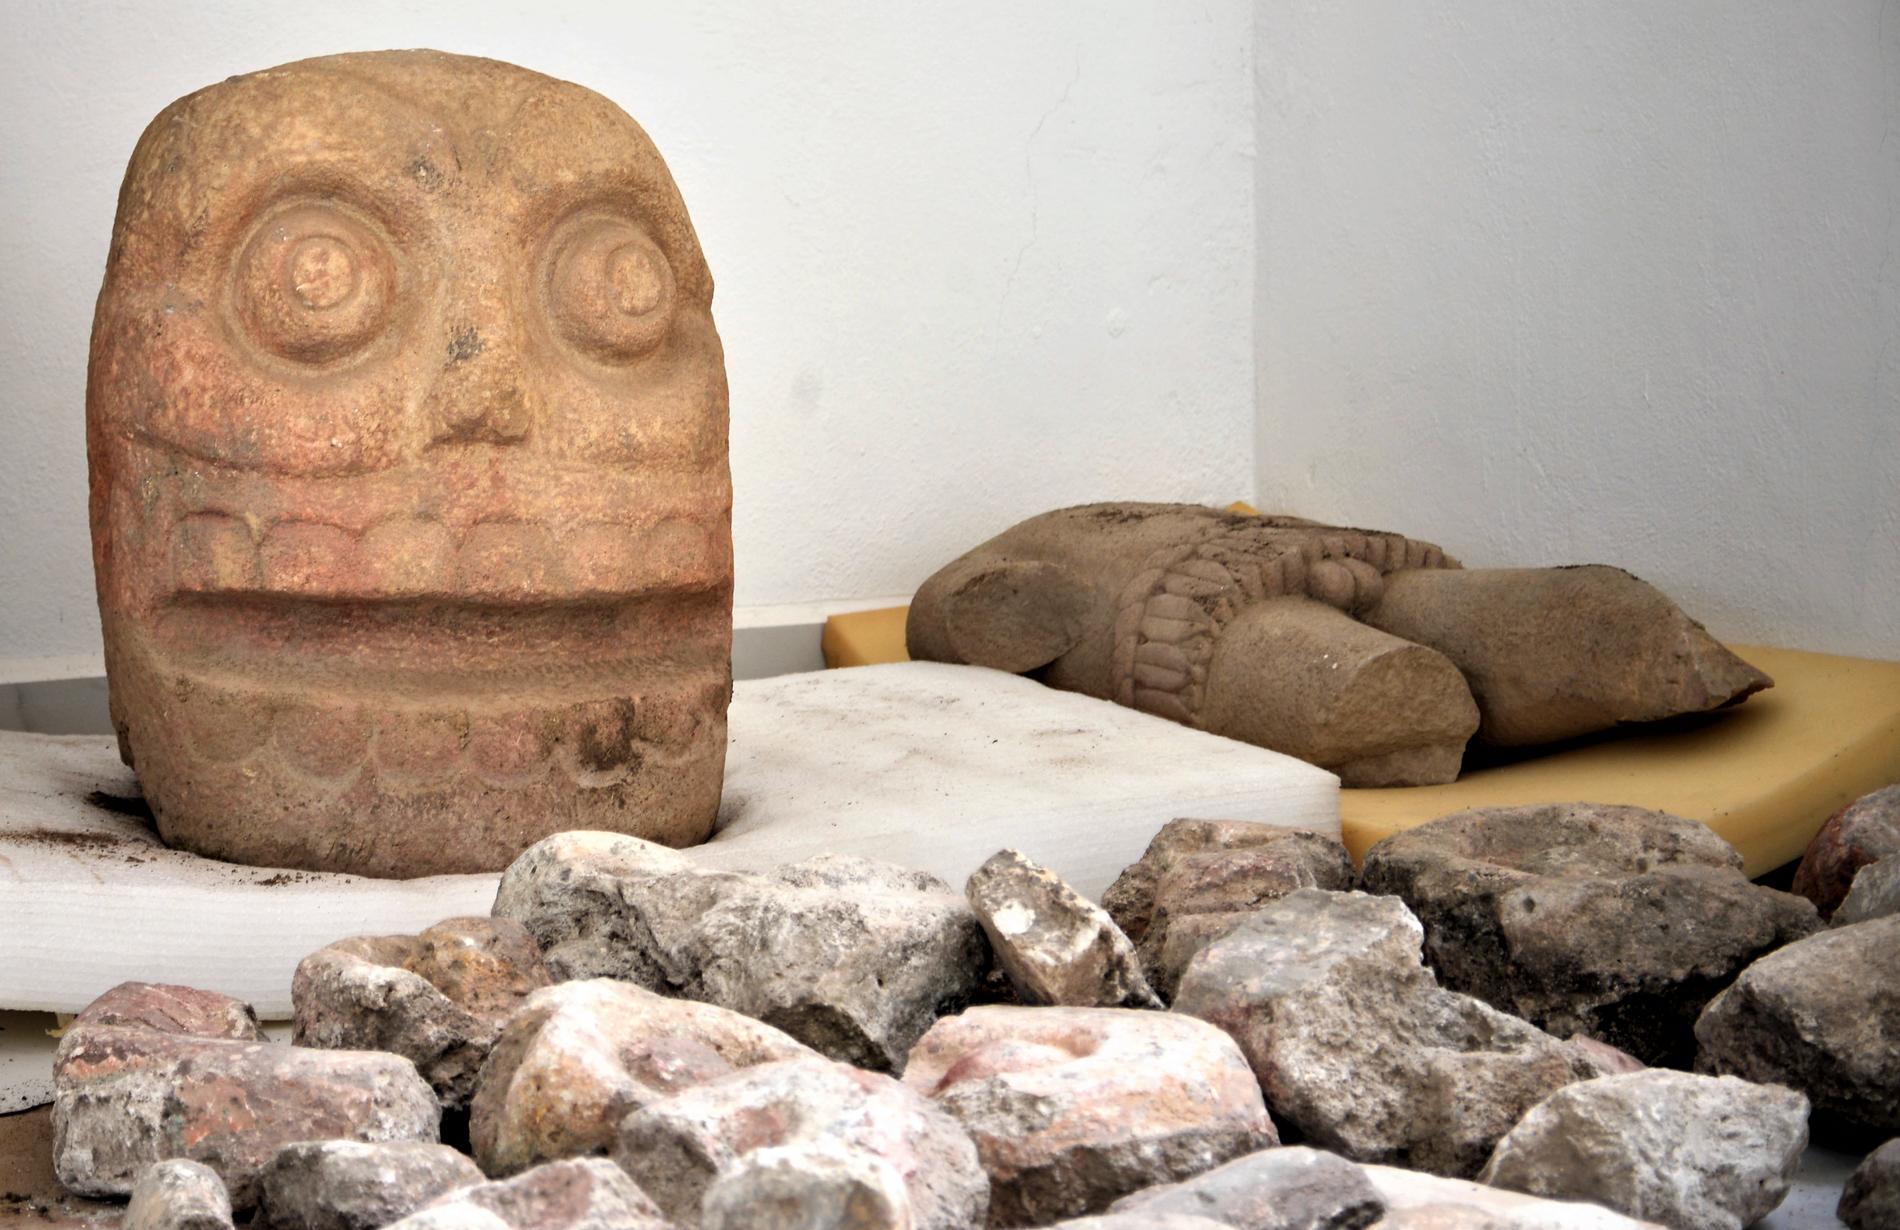 Statyn av Xipe Totec. Liknande avbildningar har hittats tidigare men det är första gången som arkeologer säger sig ha funnit ett helt tempel tillägnat guden. Bilden är från oktober 2018.